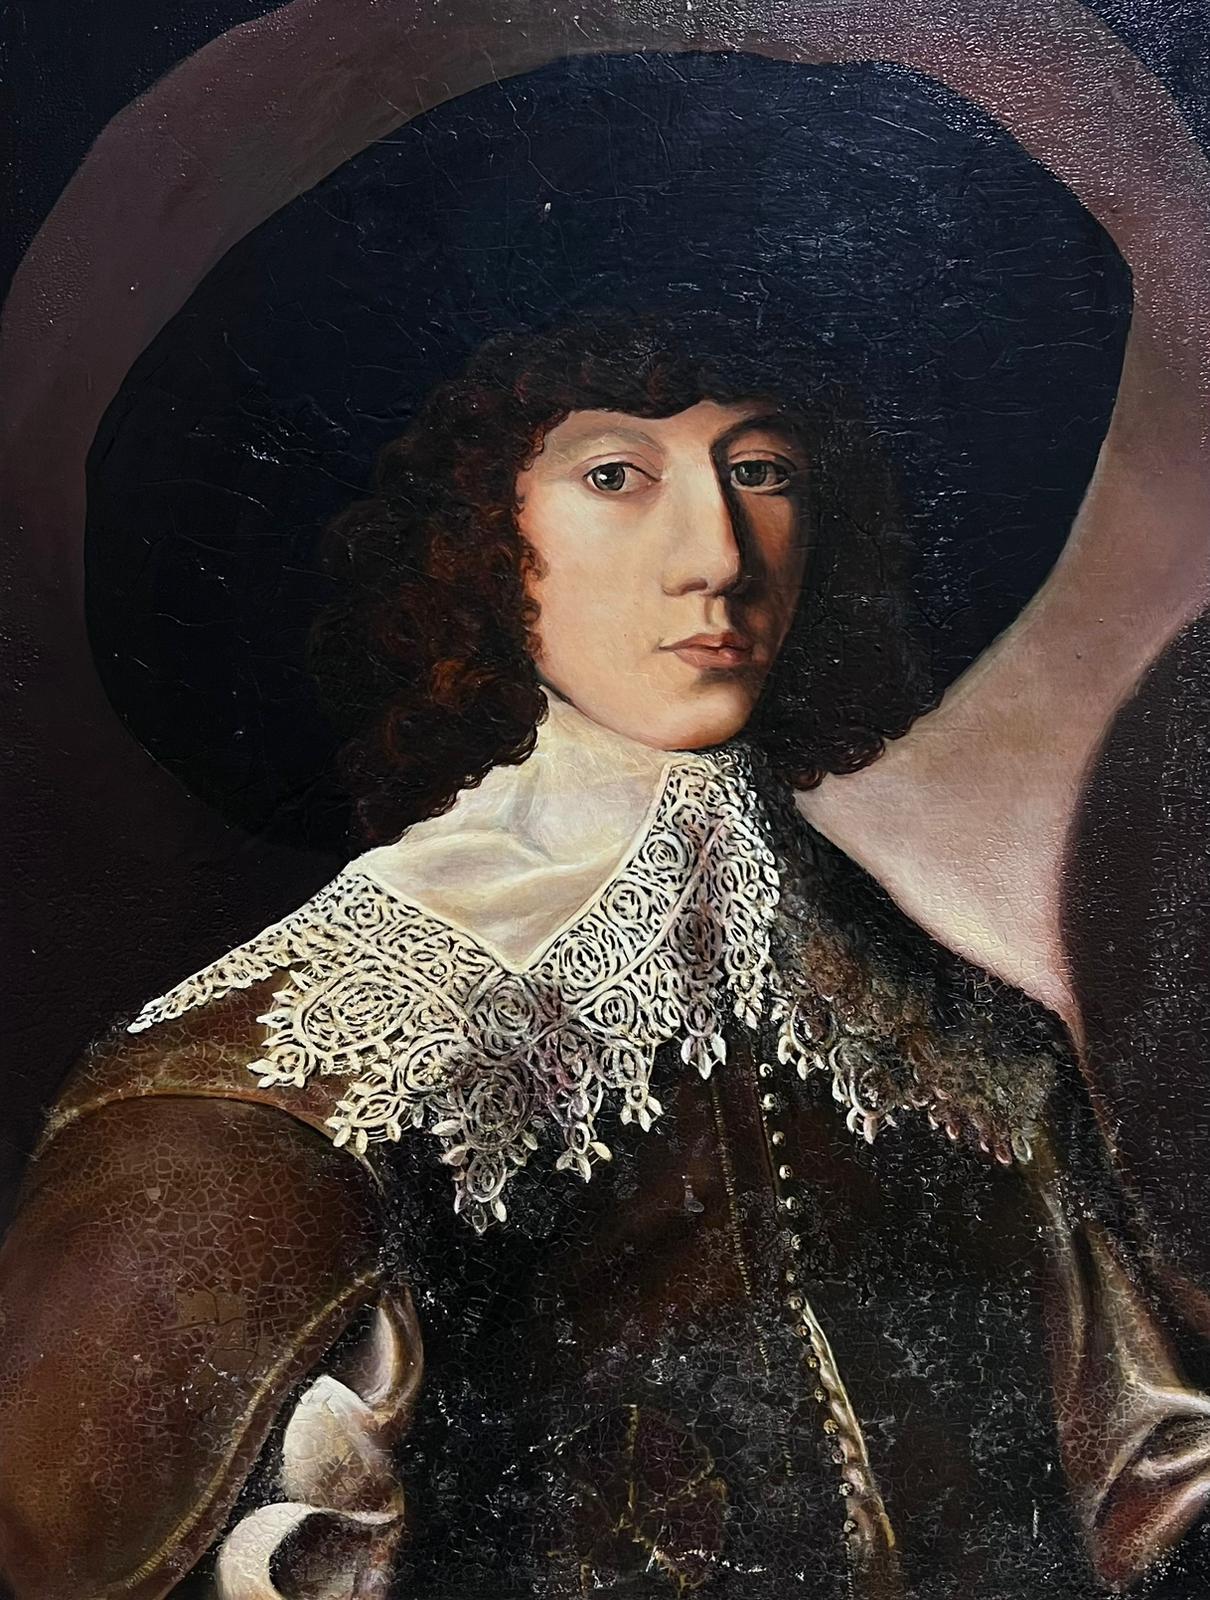 Portrait Painting French School - Peinture à l'huile Portrait d'un gentilhomme aristocrate français du 17e siècle  